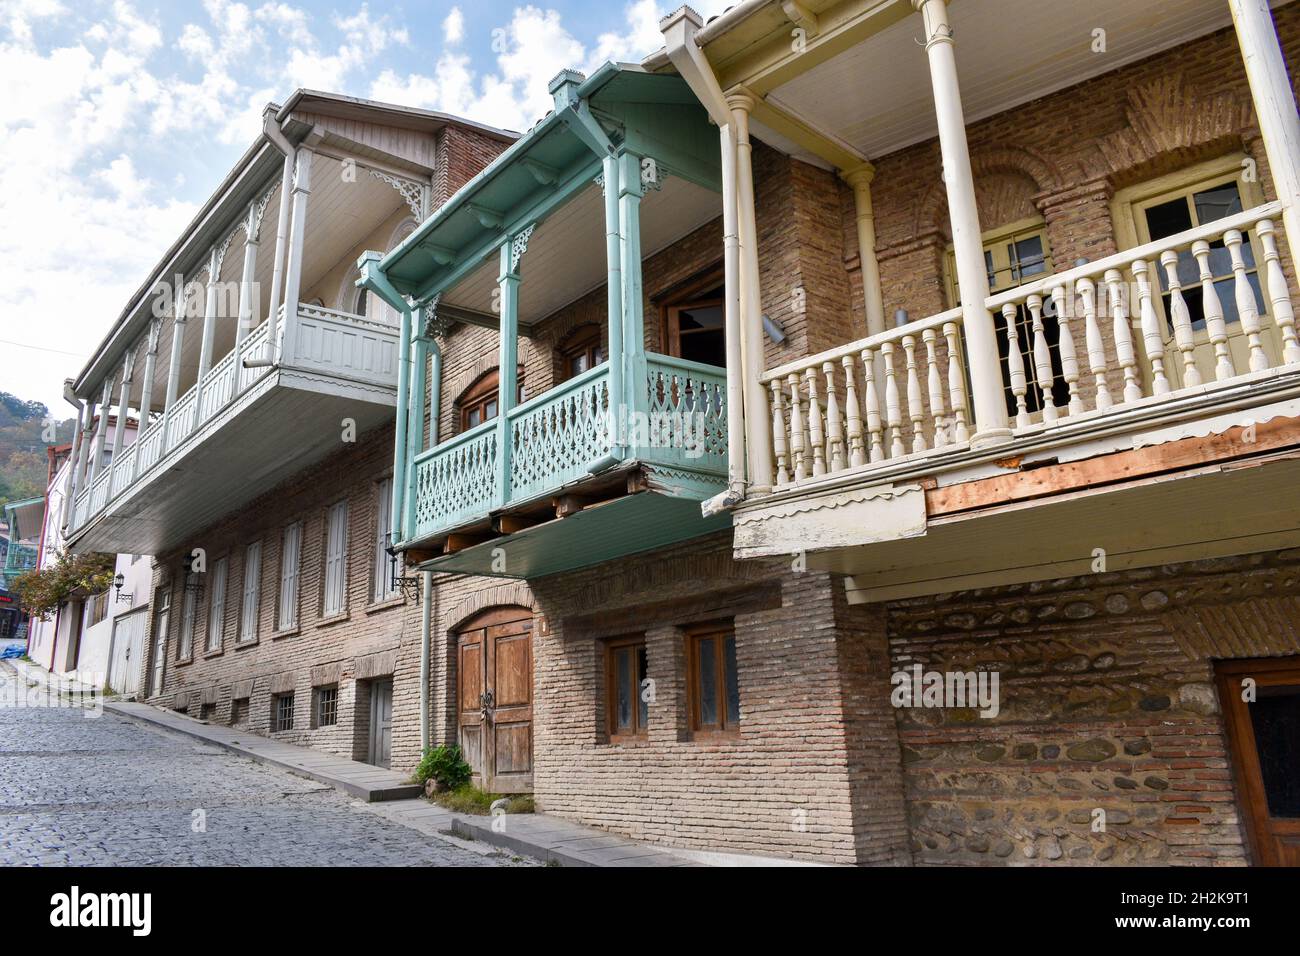 Bâtiments historiques à Sighnaghi, Kakheti, Géorgie.Maisons géorgiennes traditionnelles avec balcon en bois peint dans des tons pastel.Vieille ville historique Banque D'Images